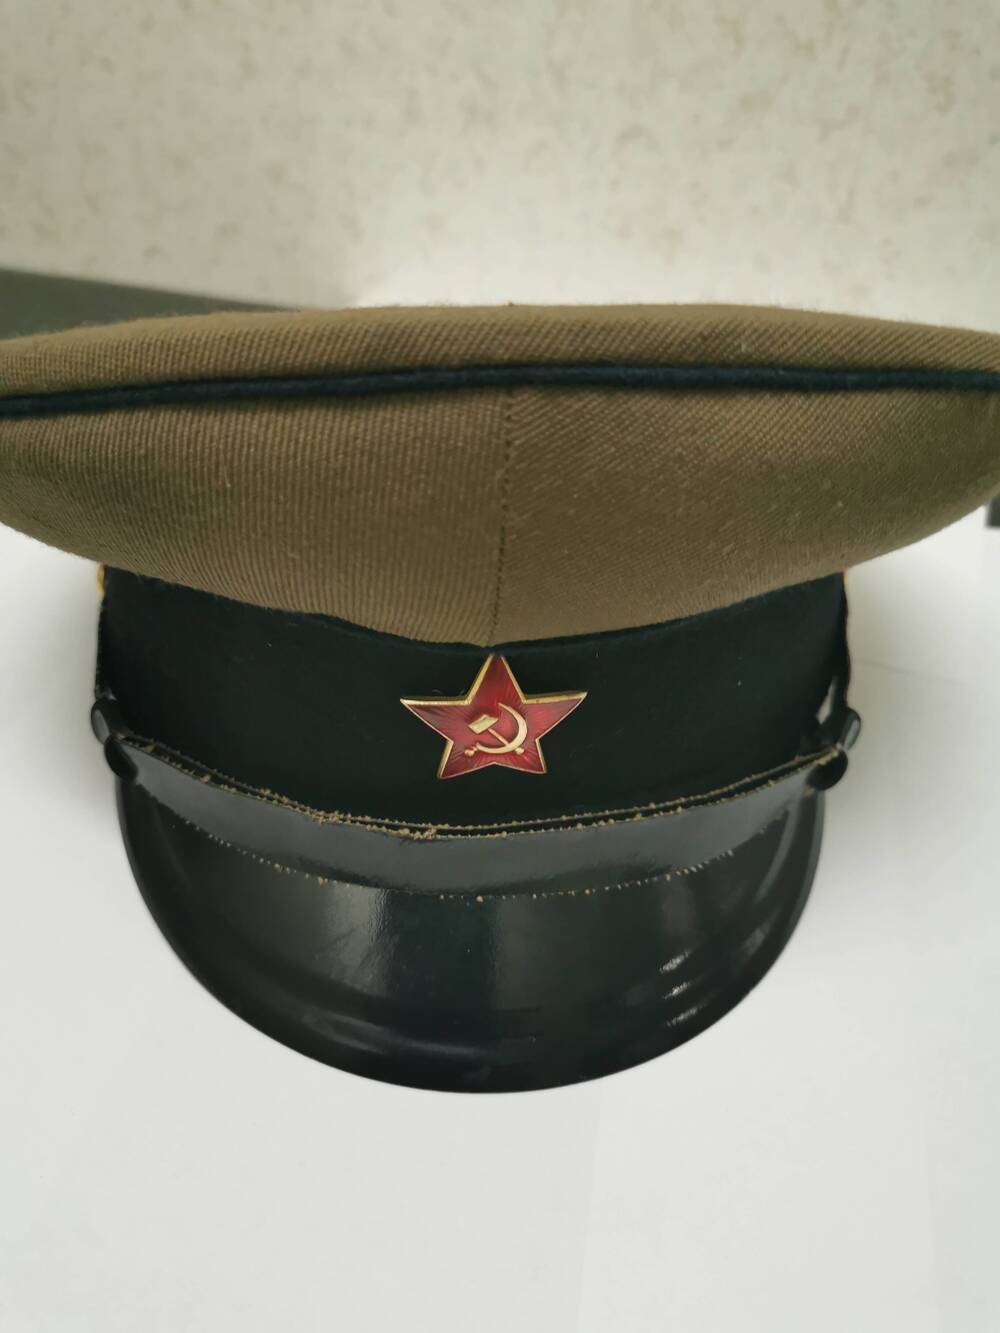 Фуражка пехотная советская образца 1940г.